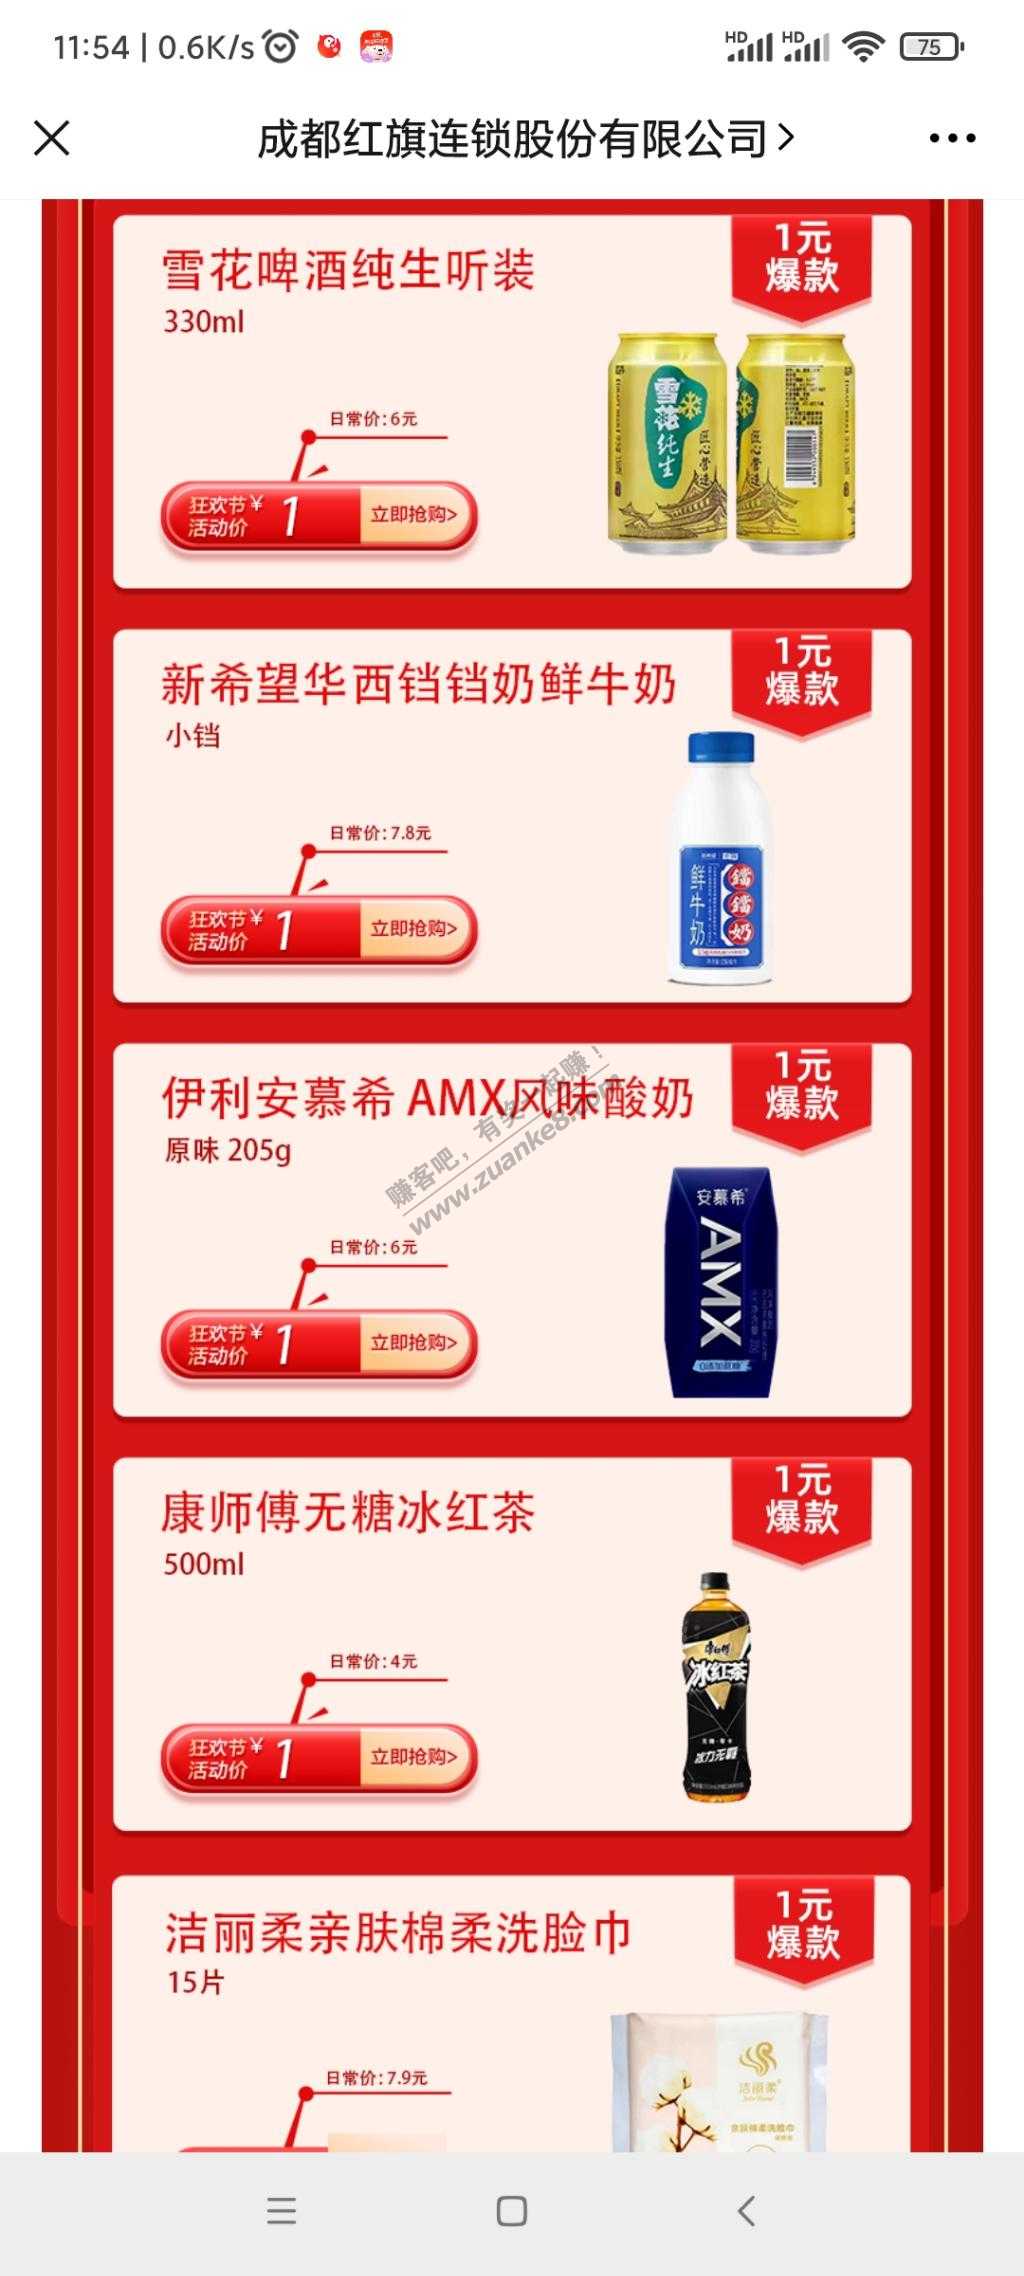 成都地区网友 抢1元 红旗连锁商品 啤酒牛奶酸奶-惠小助(52huixz.com)